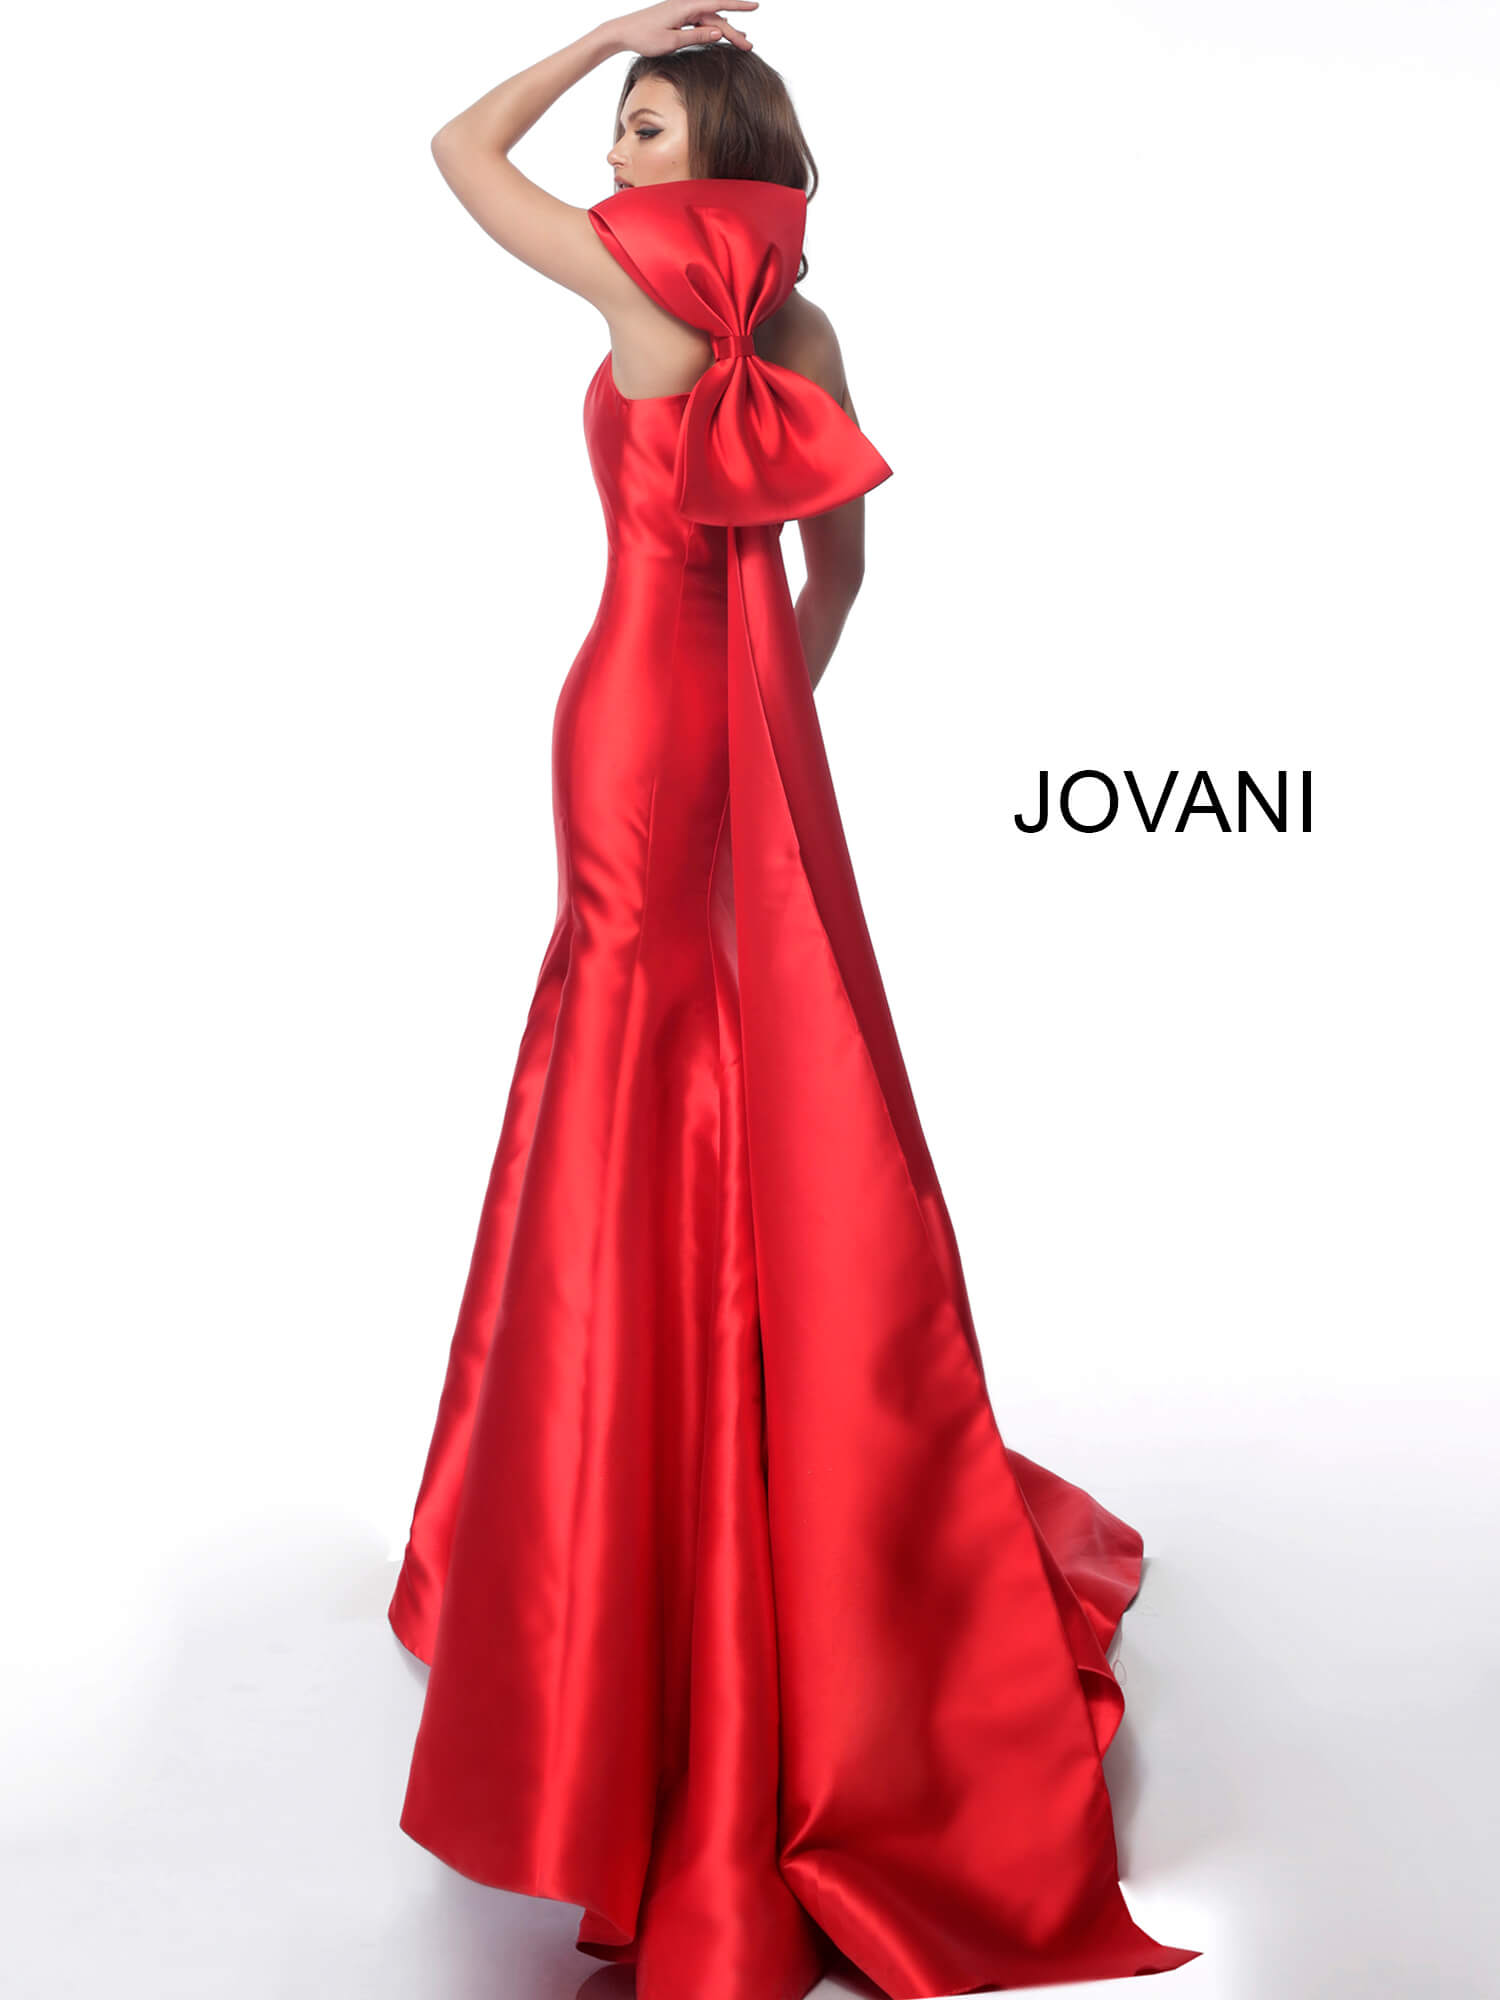 jovani mermaid gown